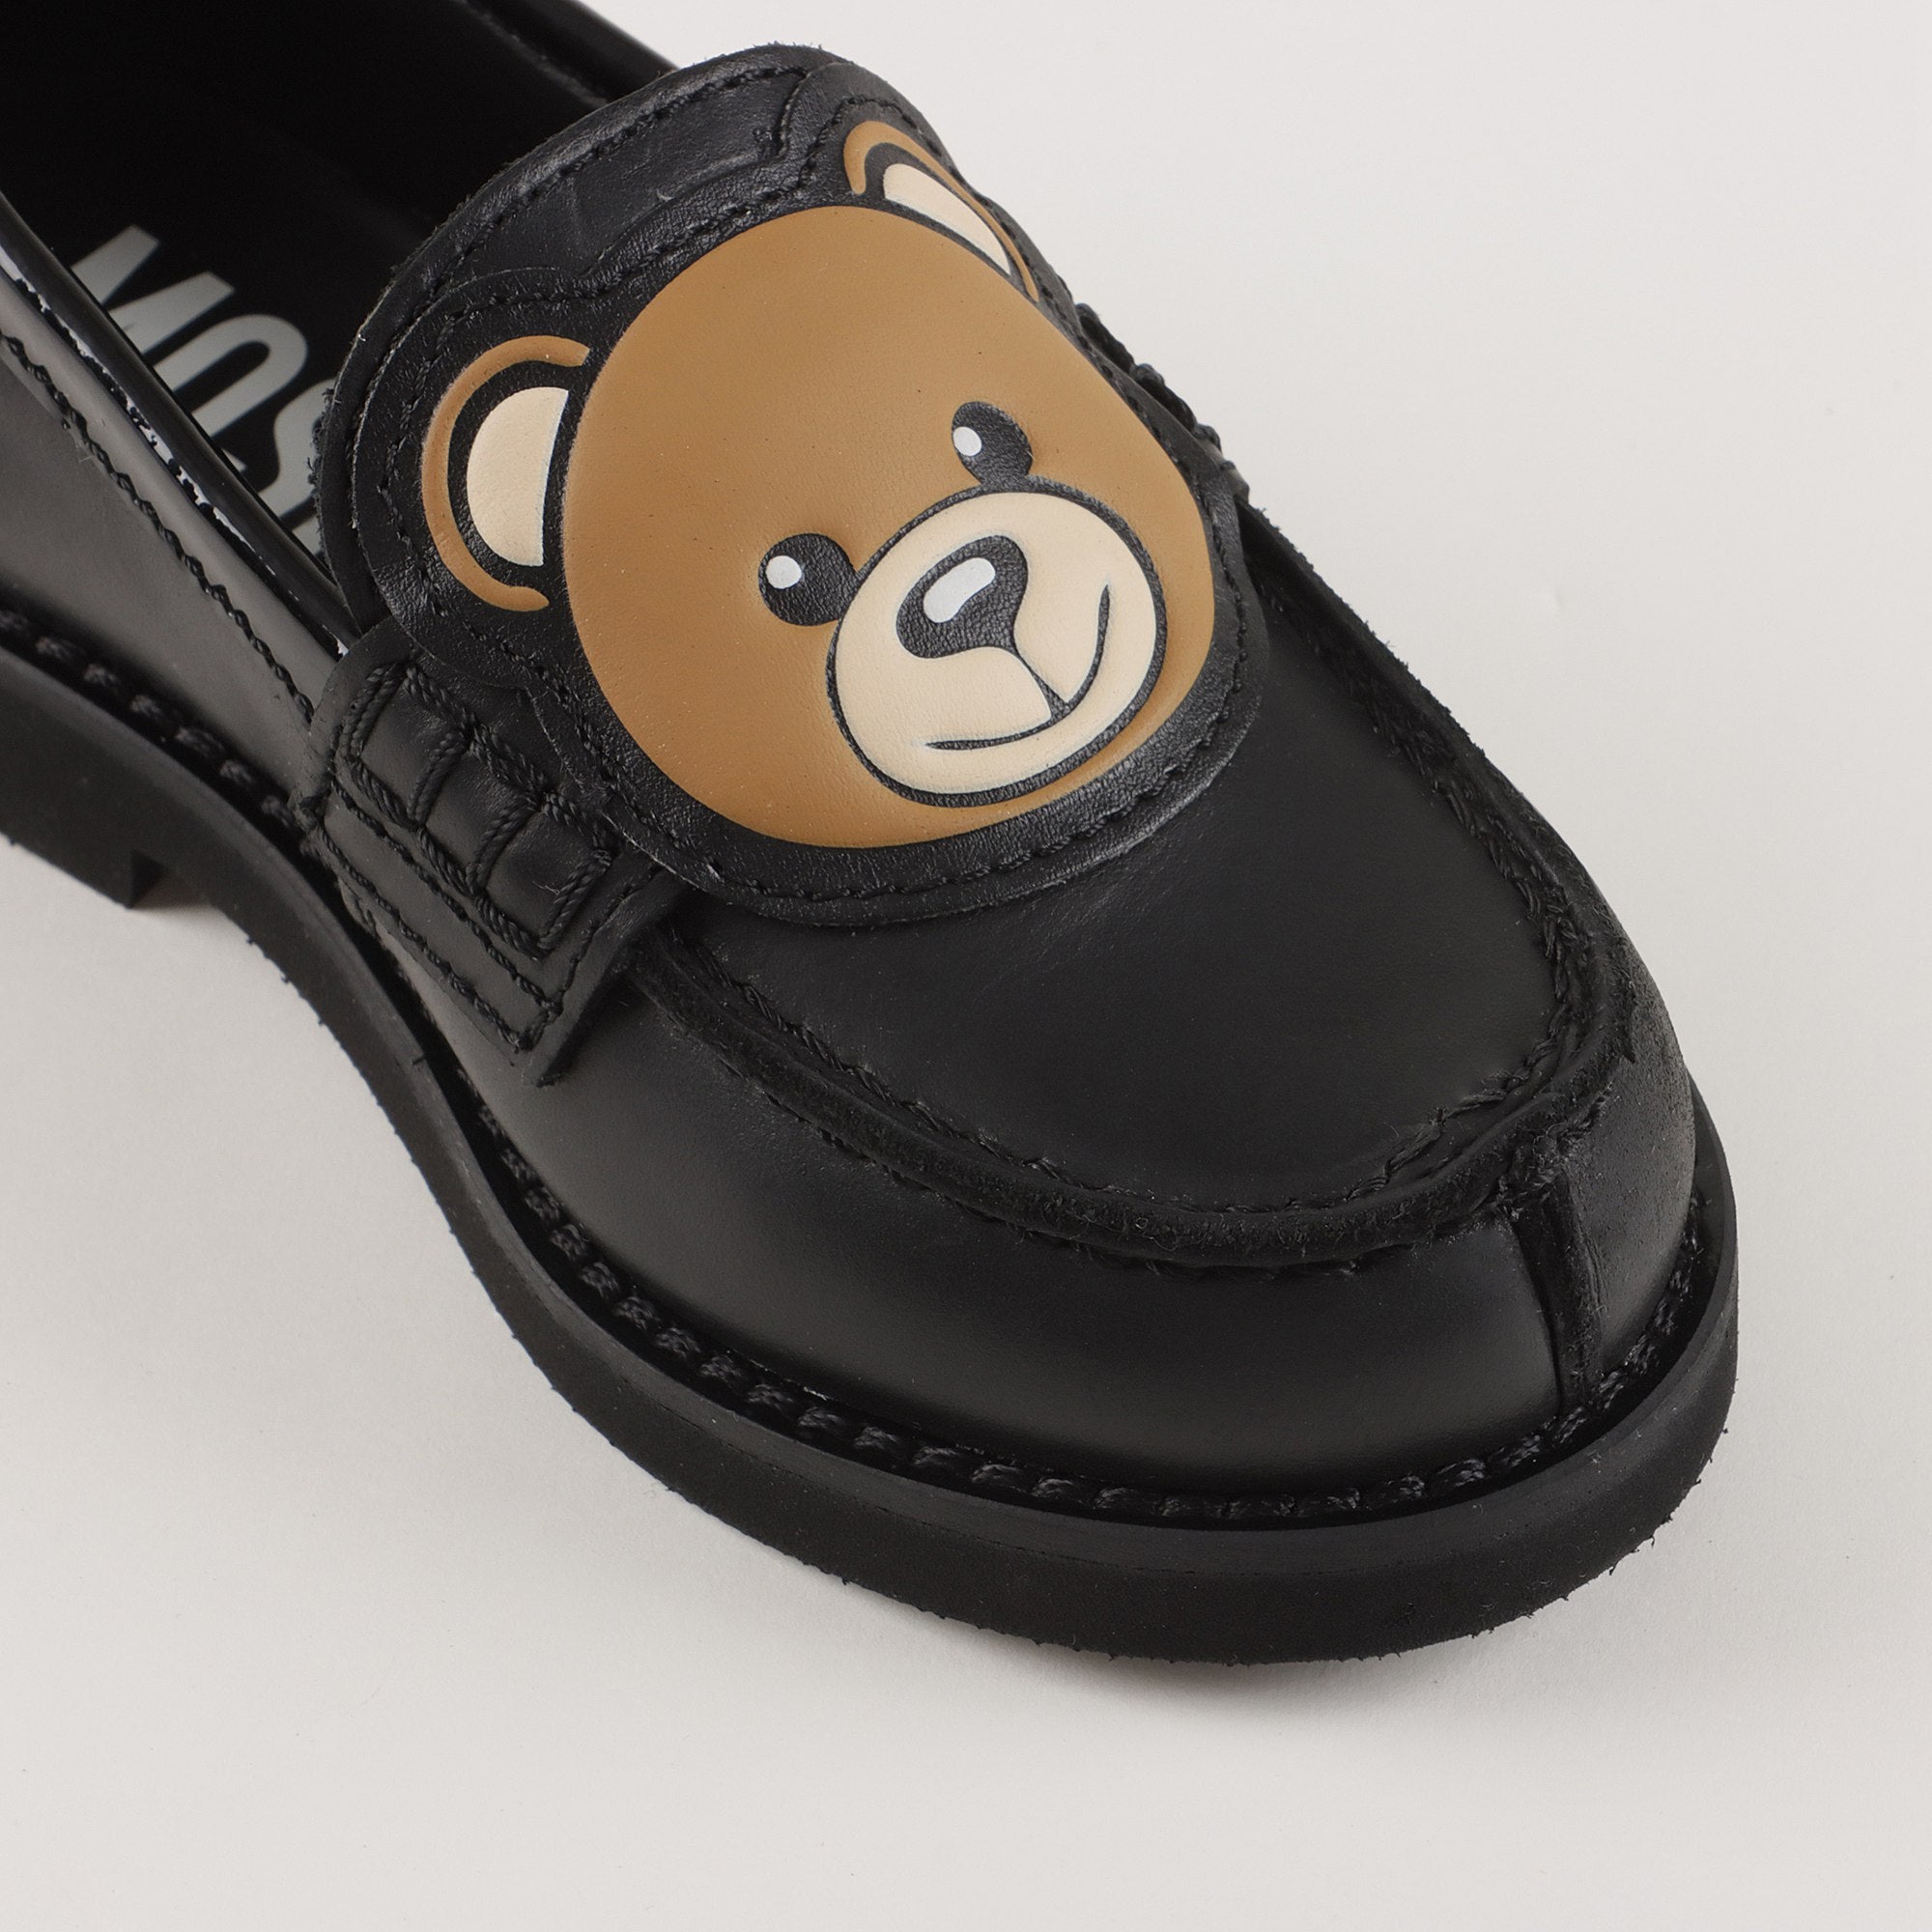 Boys & Girls Black Teddy Bear Flat Shoes